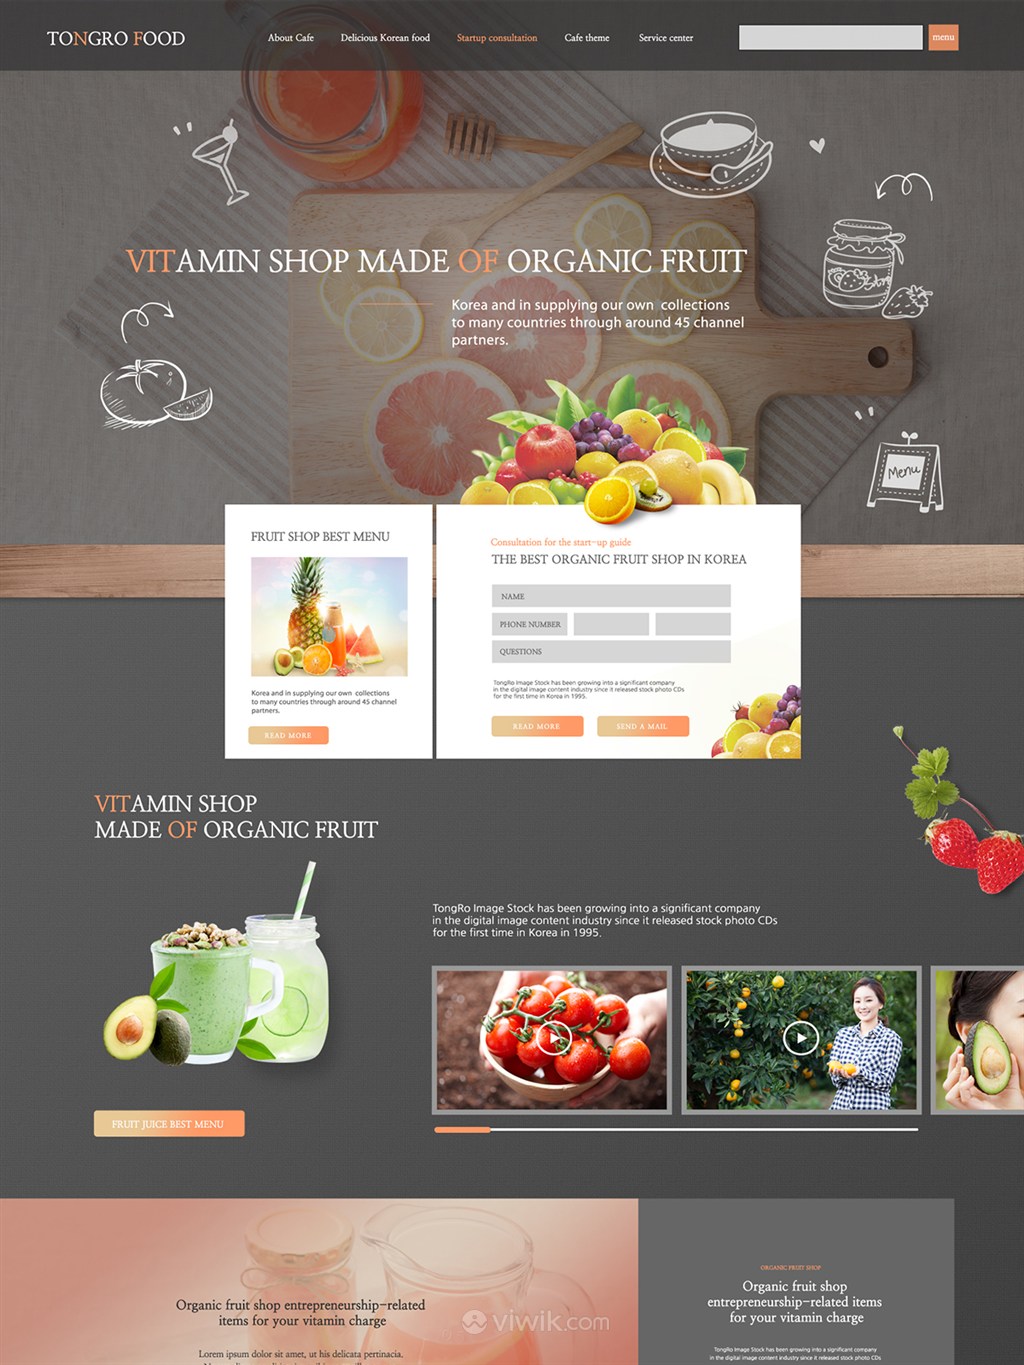 新鲜蔬果鲜榨汁官网设计模板